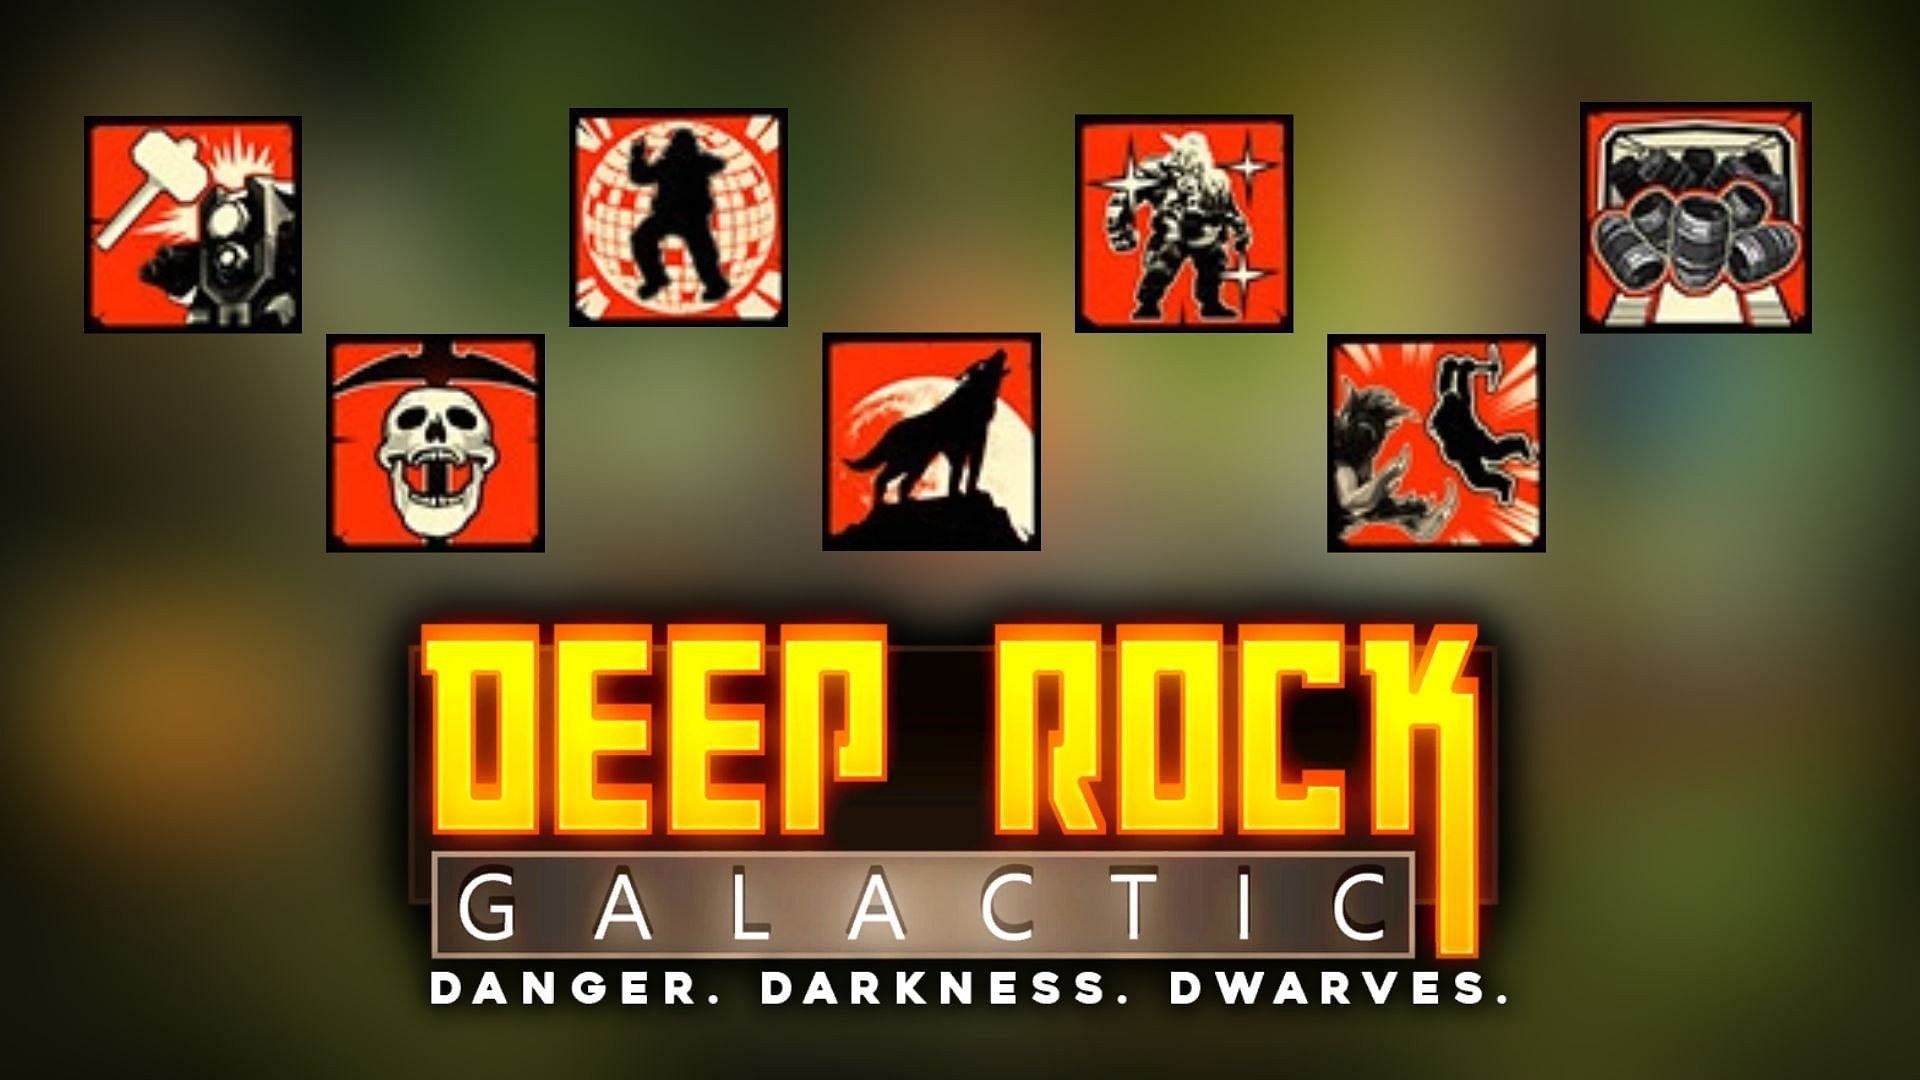 hidden achievements in Deep Rock Galactic